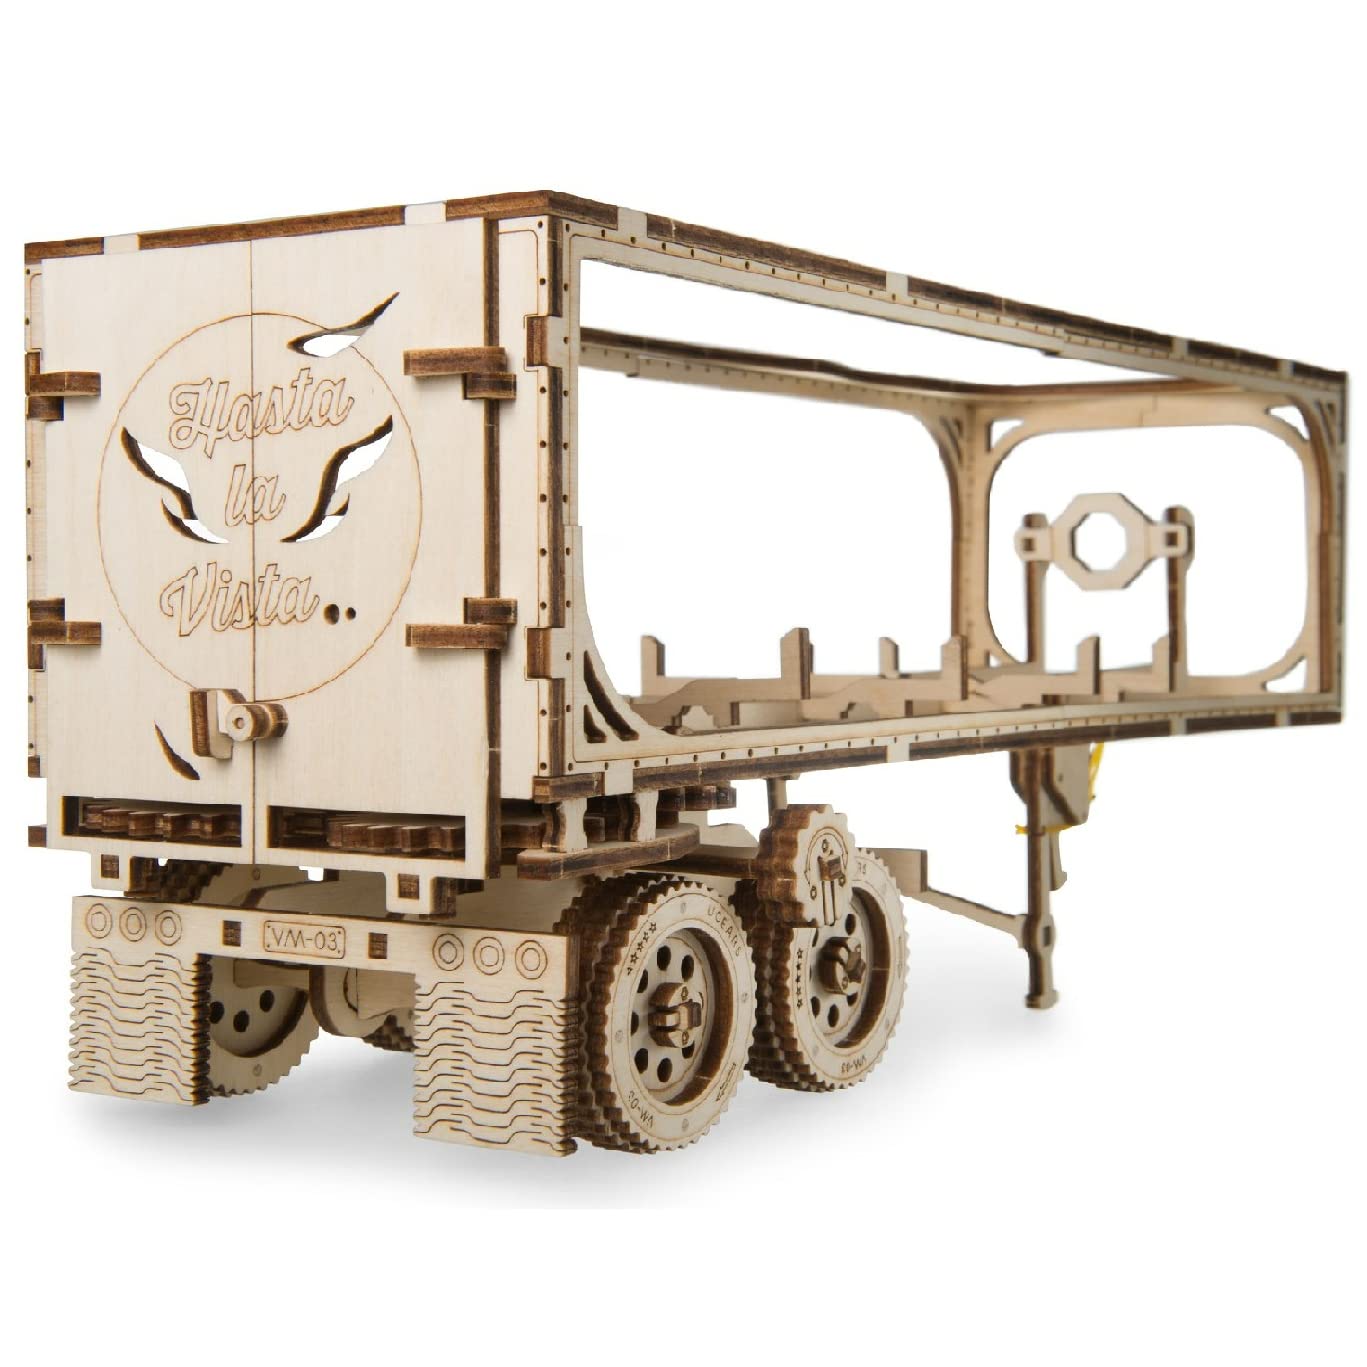 UGEARS Truck Trailer LKW Anhänger DIY Modellbausatz aus Holz – Anhänger für Schweren LKW - Sperrholz DIY Modell Zubehör – Funktionaler Mechanismus –Selbstmontage ohne Kleber